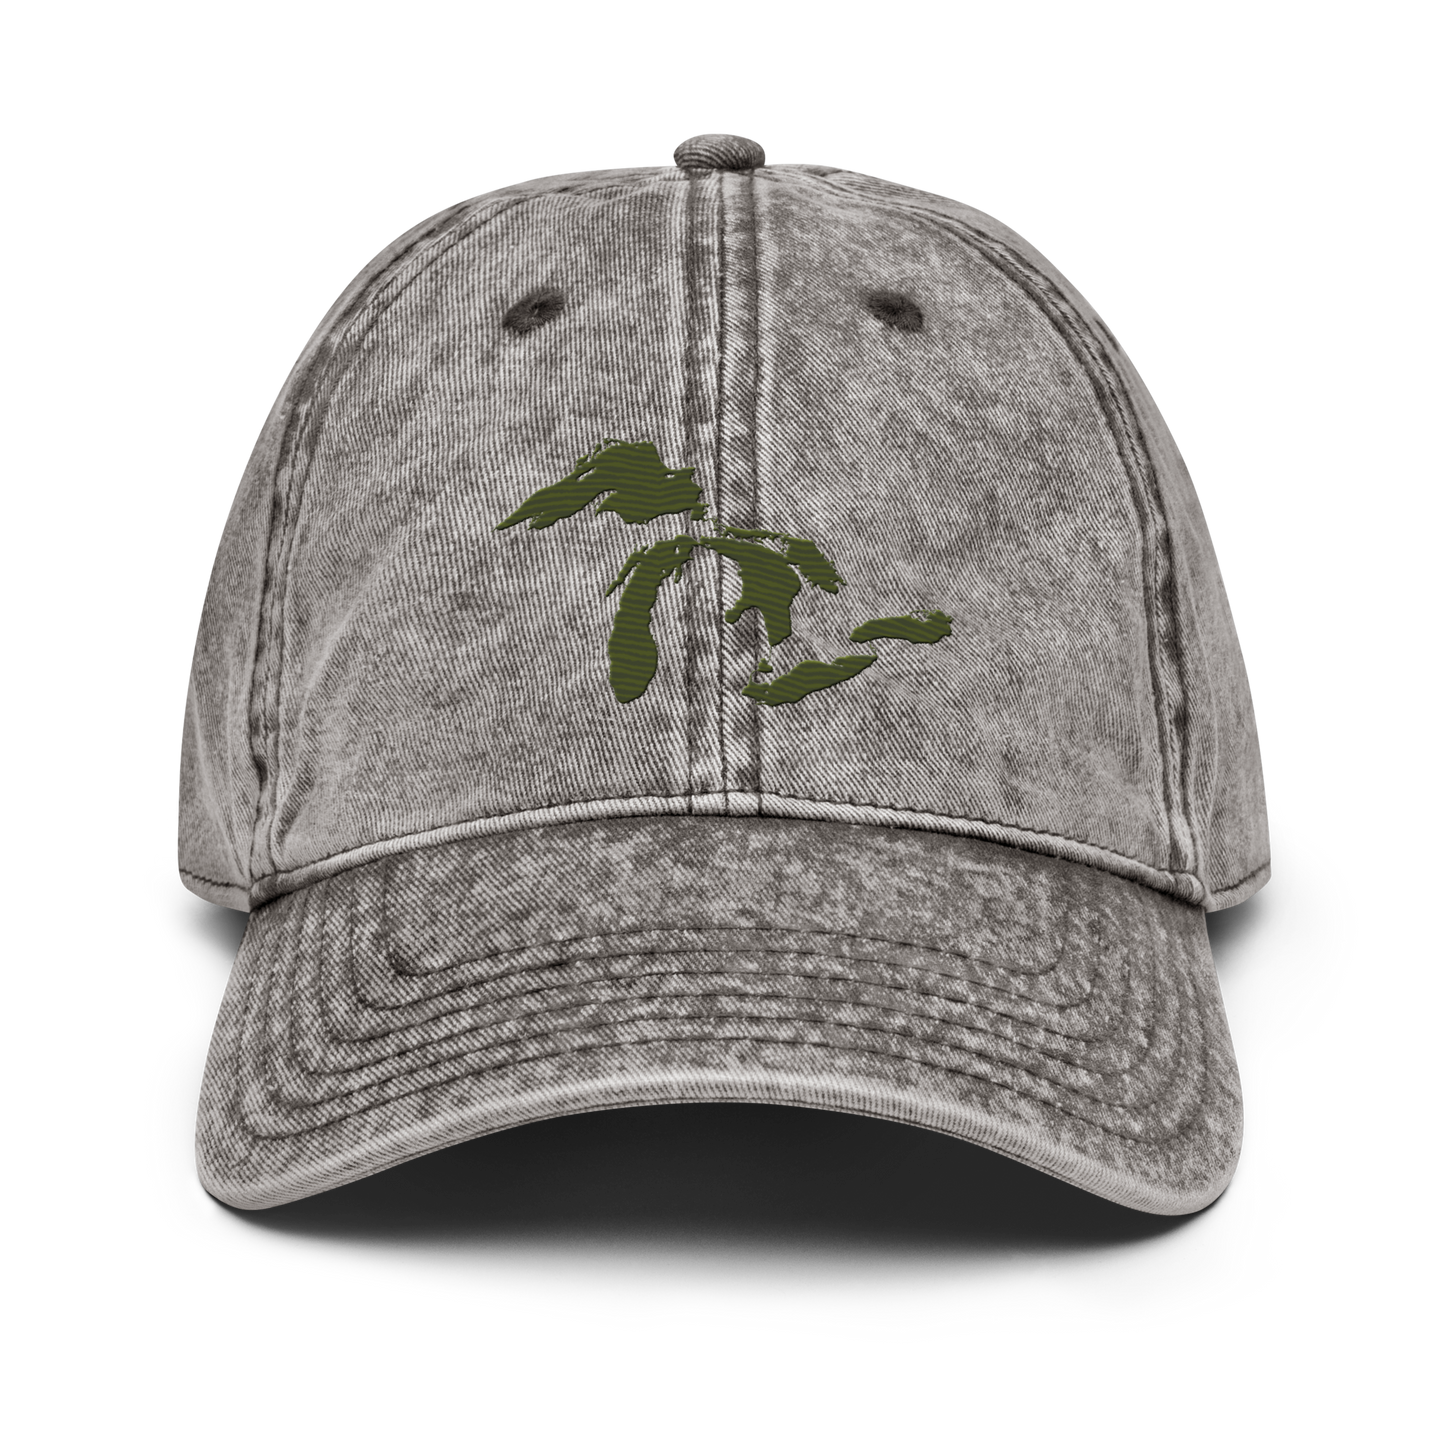 Great Lakes Vintage Baseball Cap | Army Green